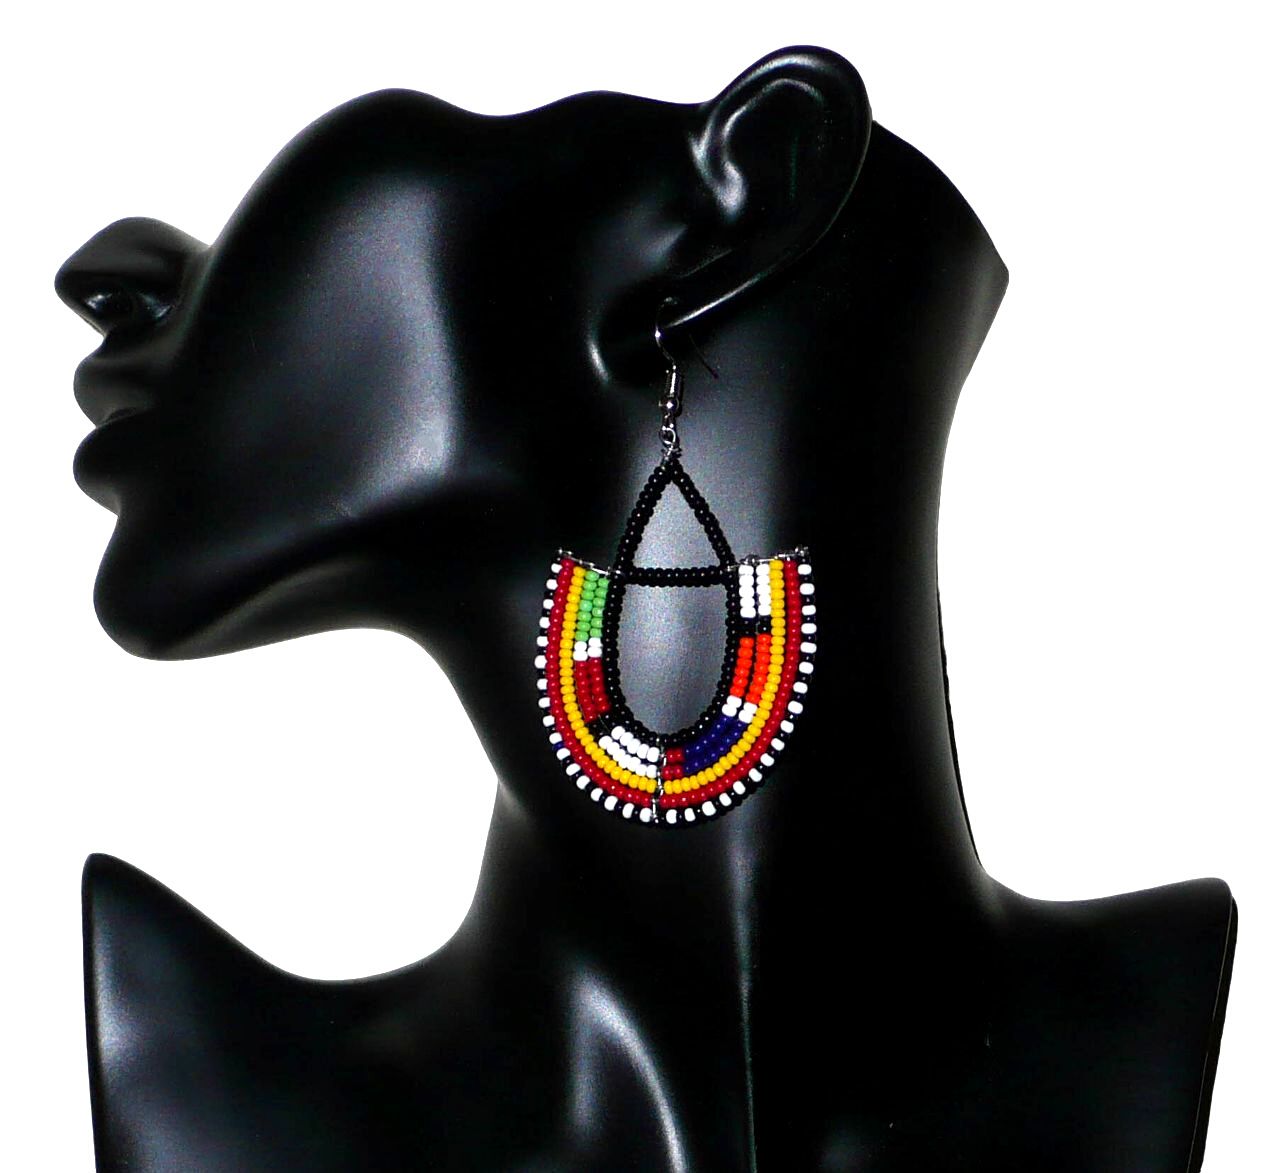 Bijoux africains traditionnels. Boucles d'oreilles africaines fabriquées au Kenya par des femmes de la tribu Massai ; elles sont composées de perles de rocaille noires et multicolores glissées sur des trames géométriques en fils de fer en forme d'ancres. Elles mesurent 7,5 cm de long et 4,5 cm de large. Elles se portent sur des oreilles percées avec des crochets en acier inoxydable. Elles sont sur cette photo présentées sur un mannequin. Timeless Fineries